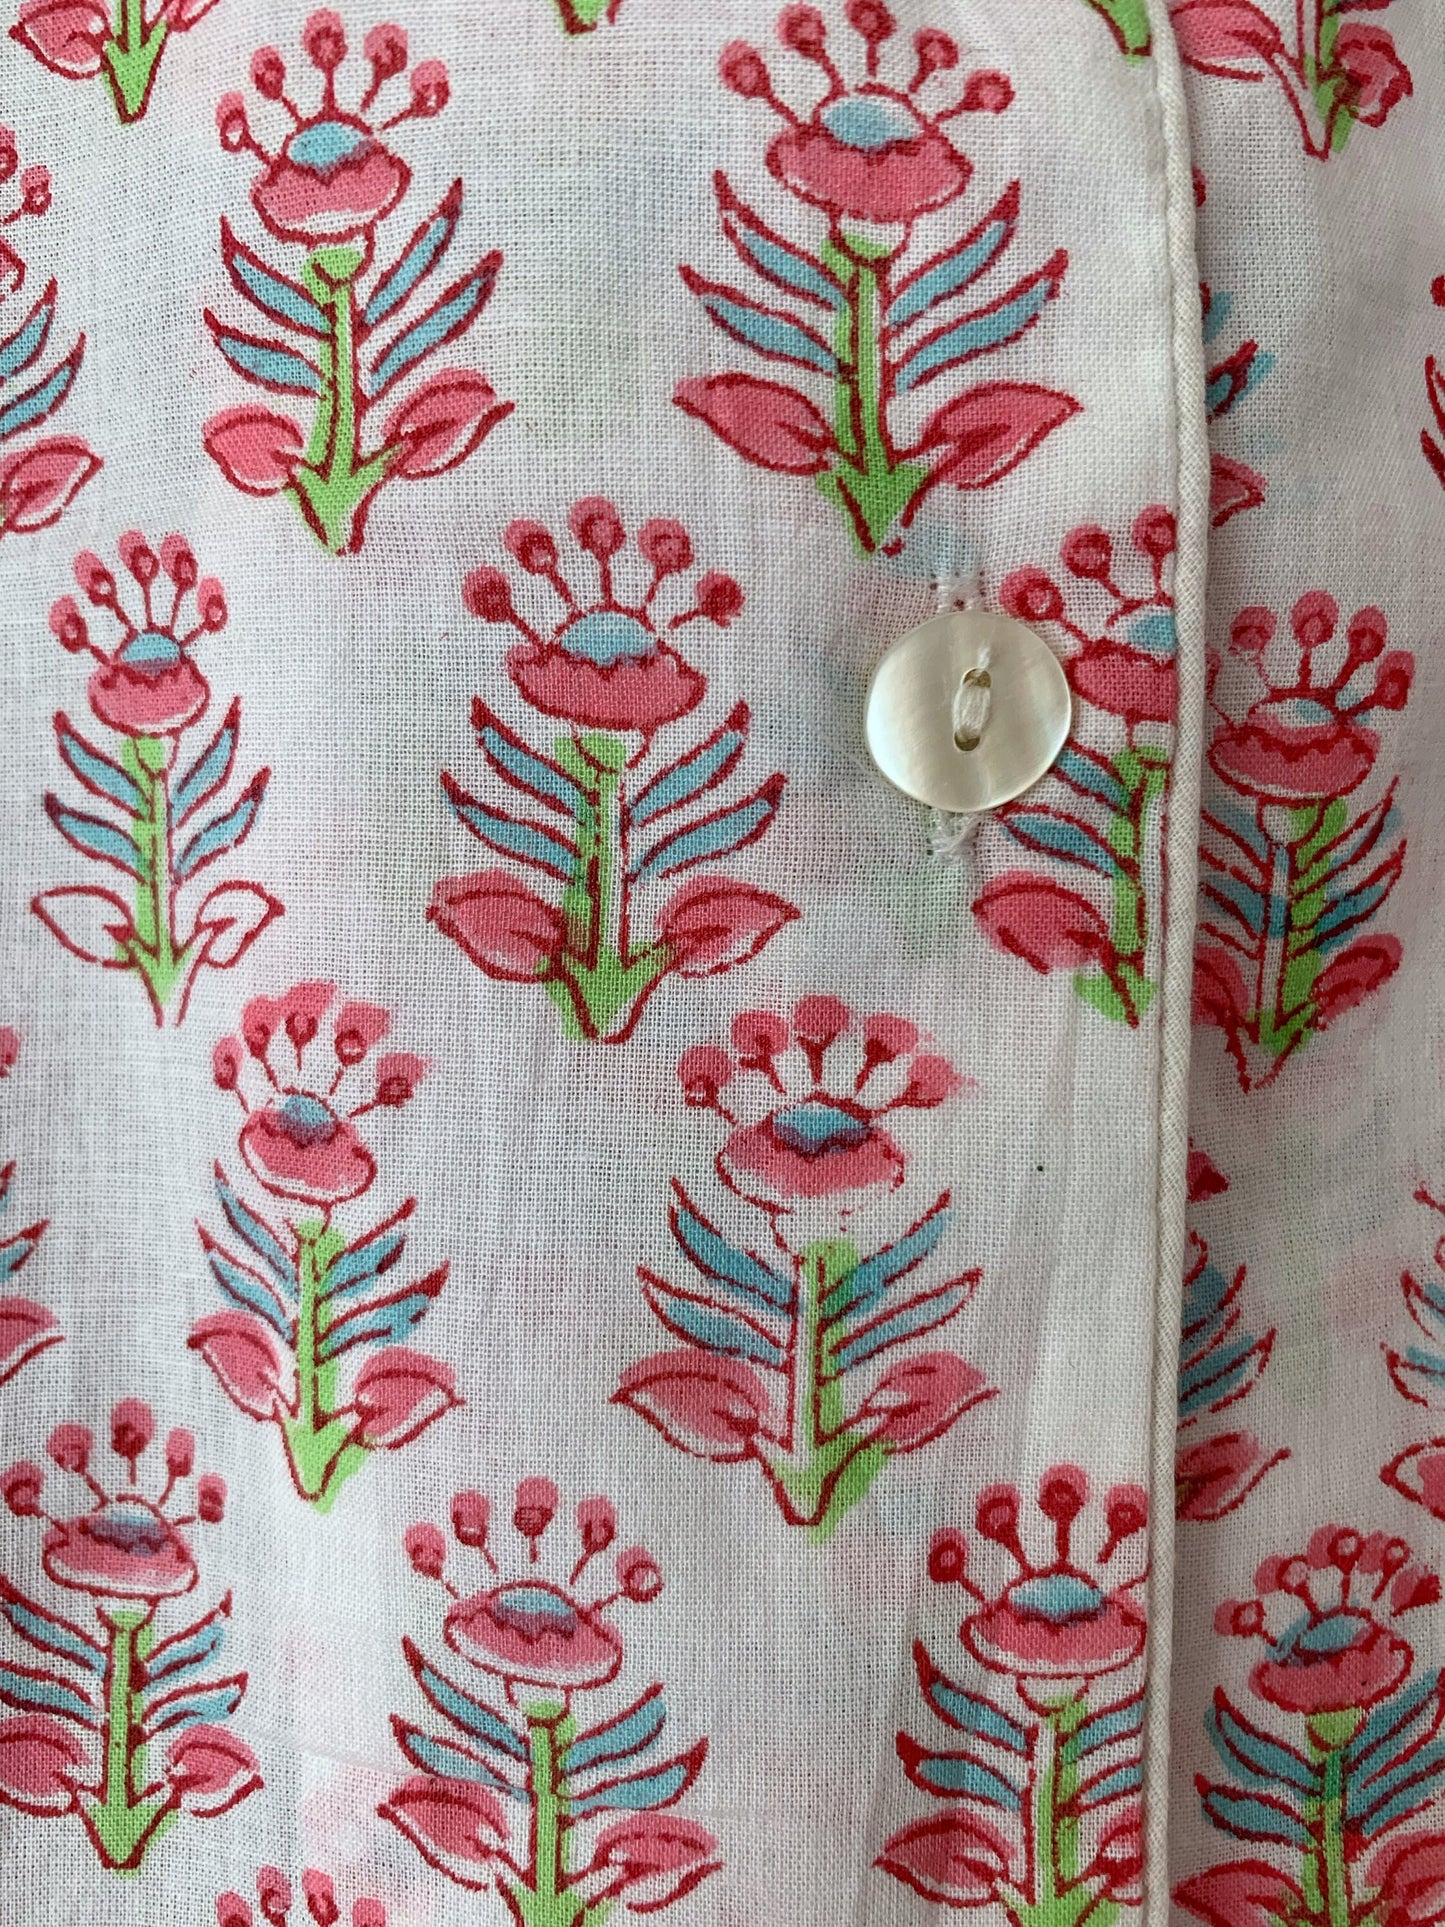 Camisón · Algodón puro estampado block print artesanal en India · Camisa para dormir algodón 100% · Camisón algodón manga larga · Flores